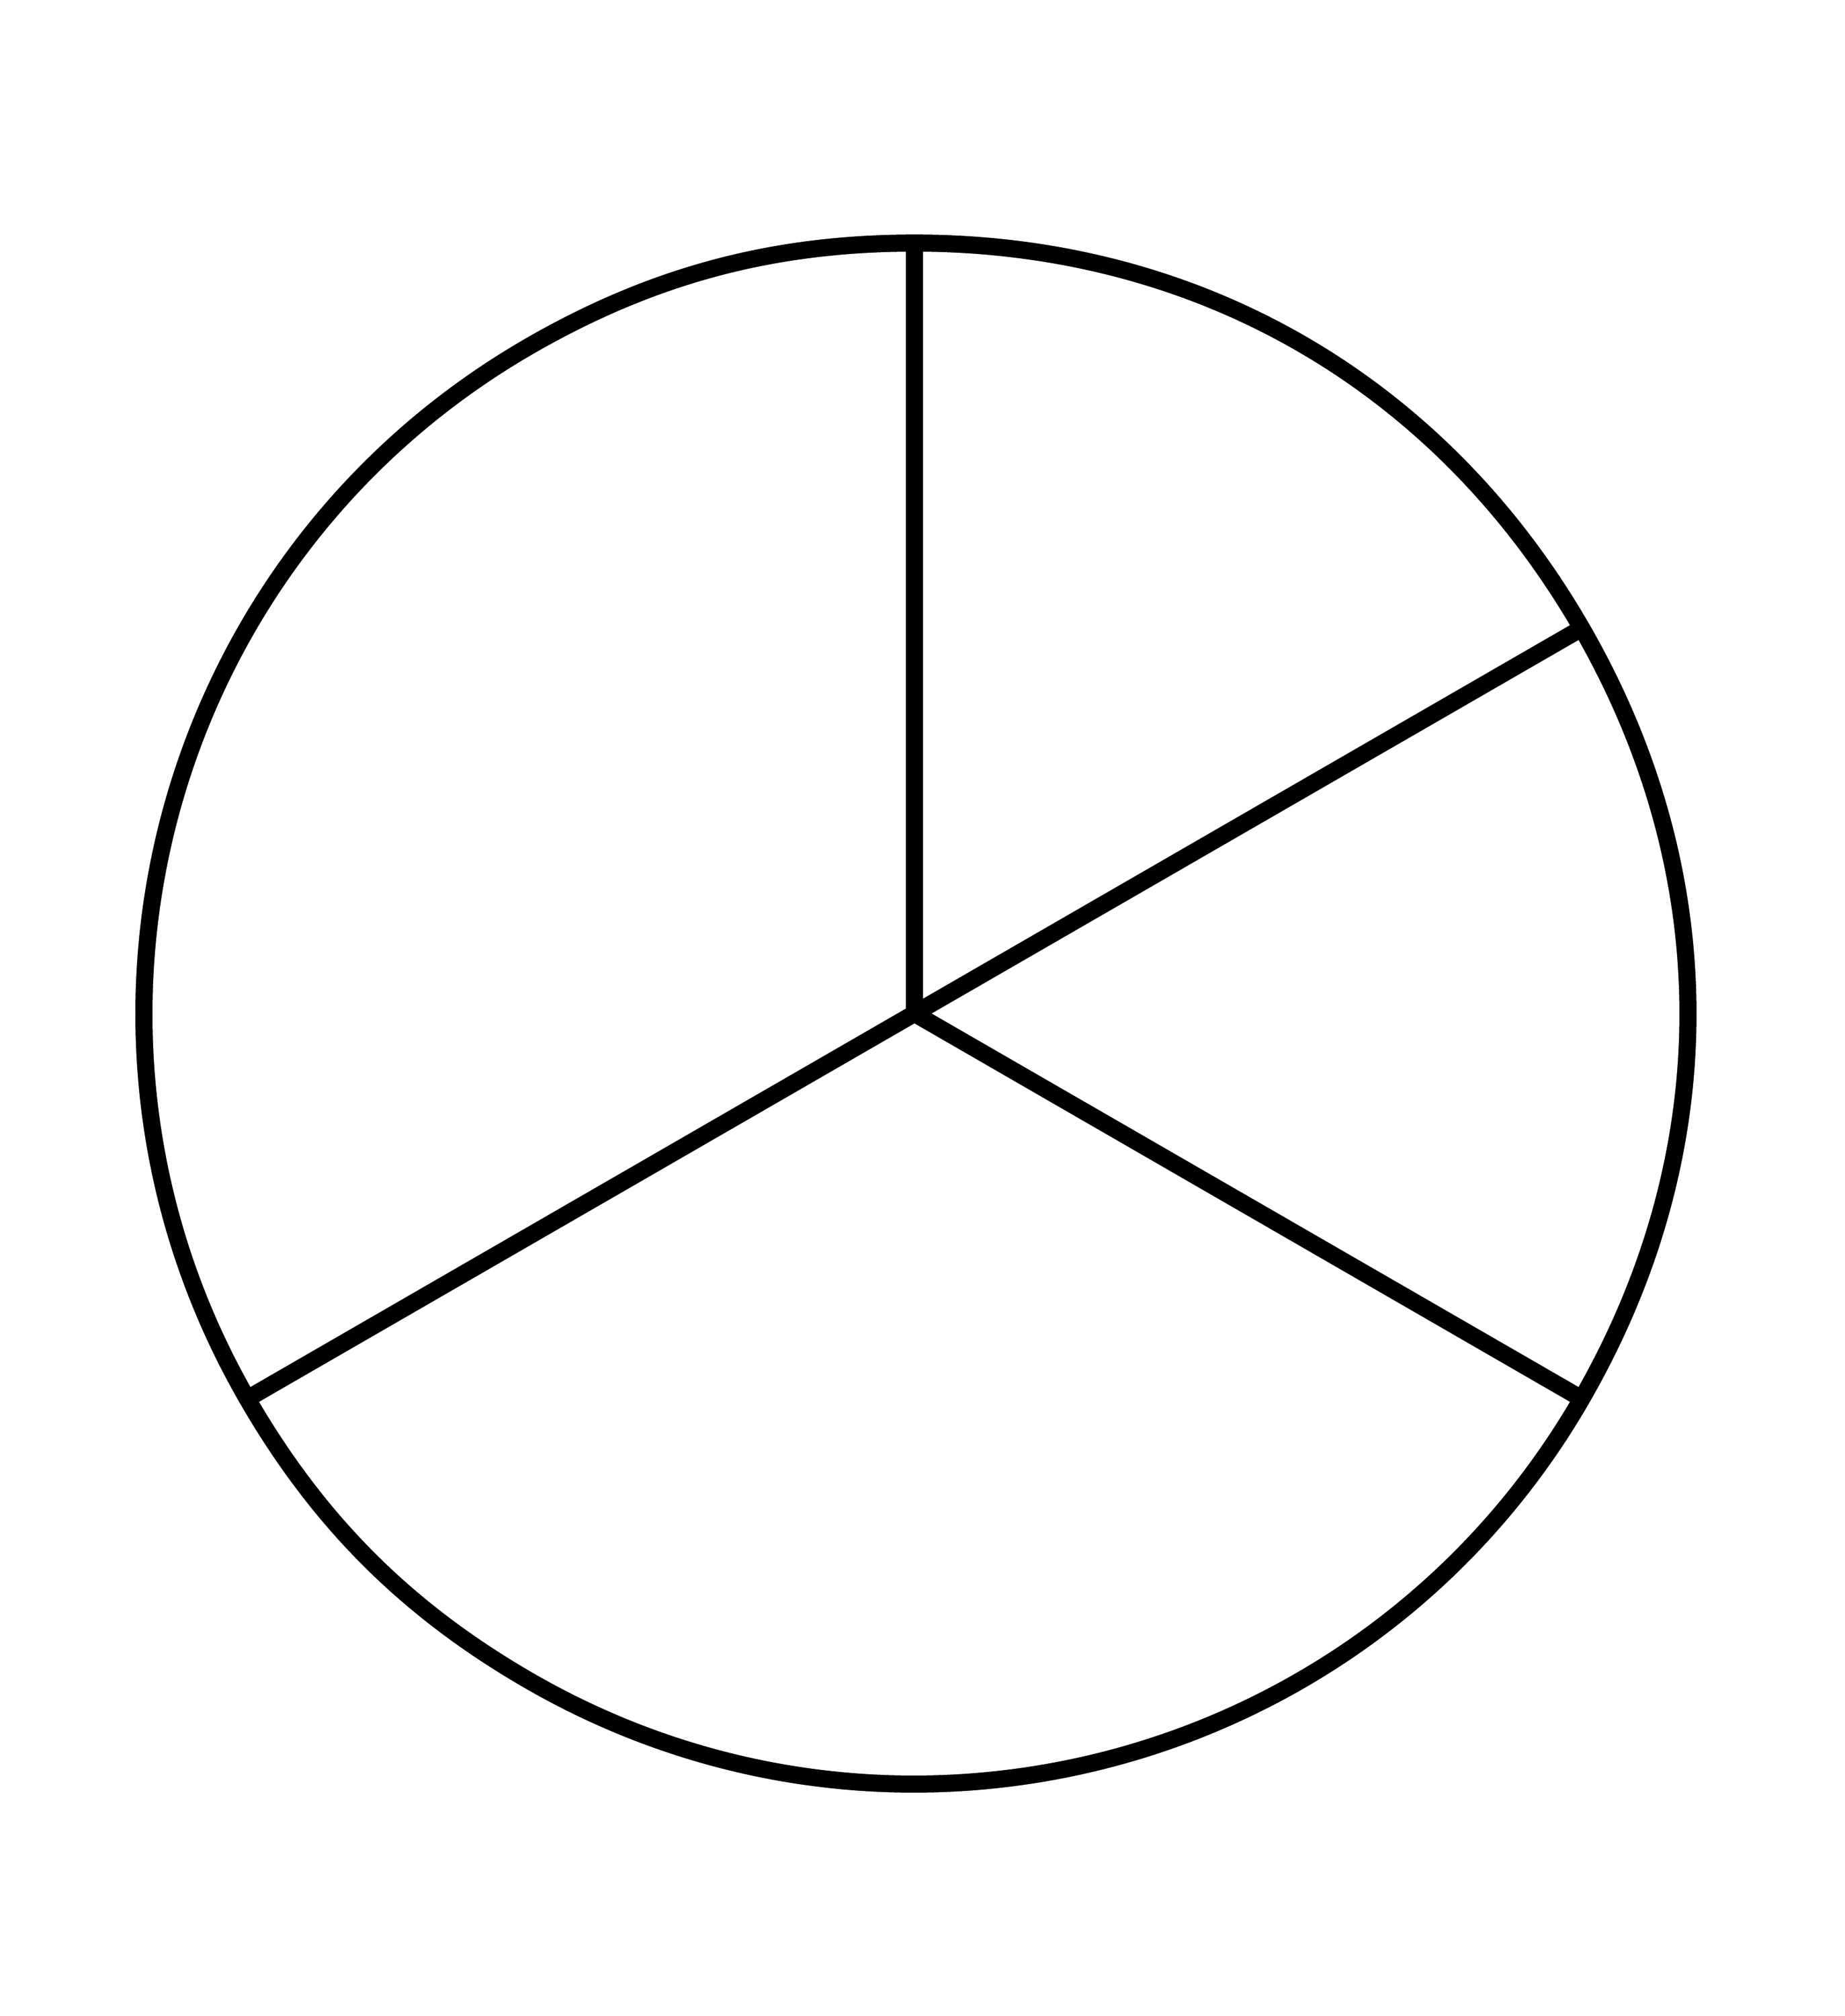 Круг разделенный на четыре части